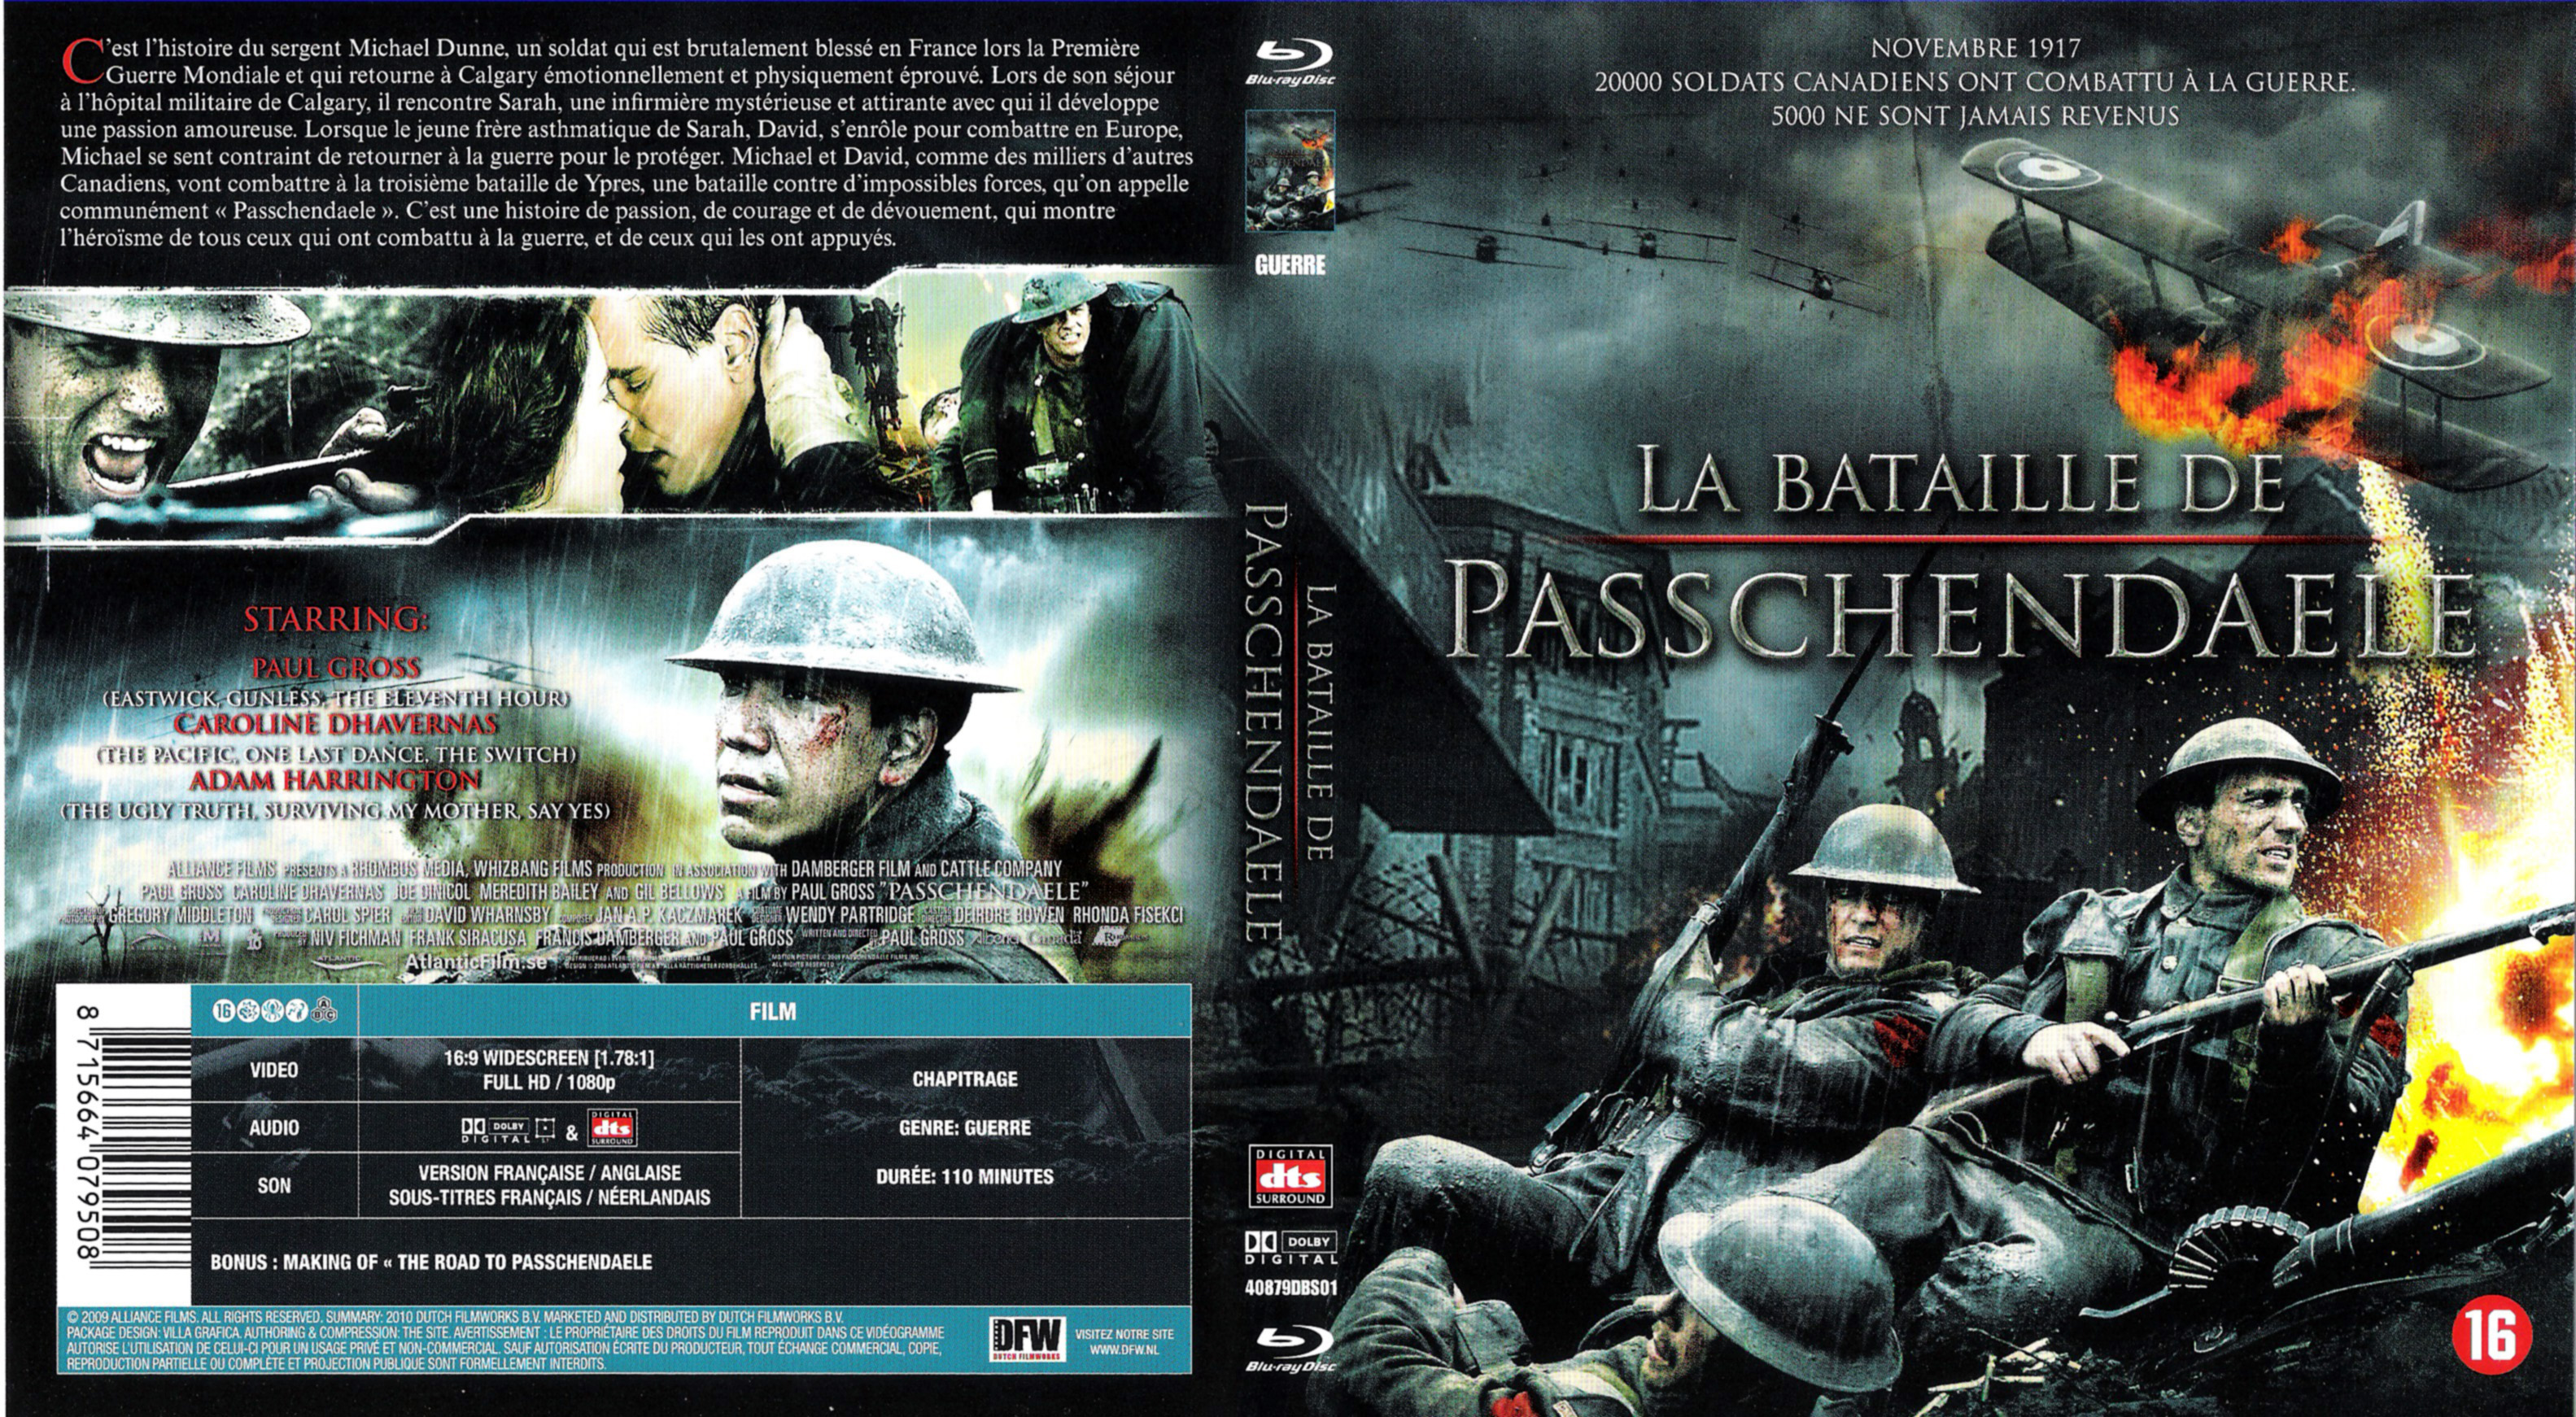 Jaquette DVD La bataille de Passchendaele (BLU-RAY) v2